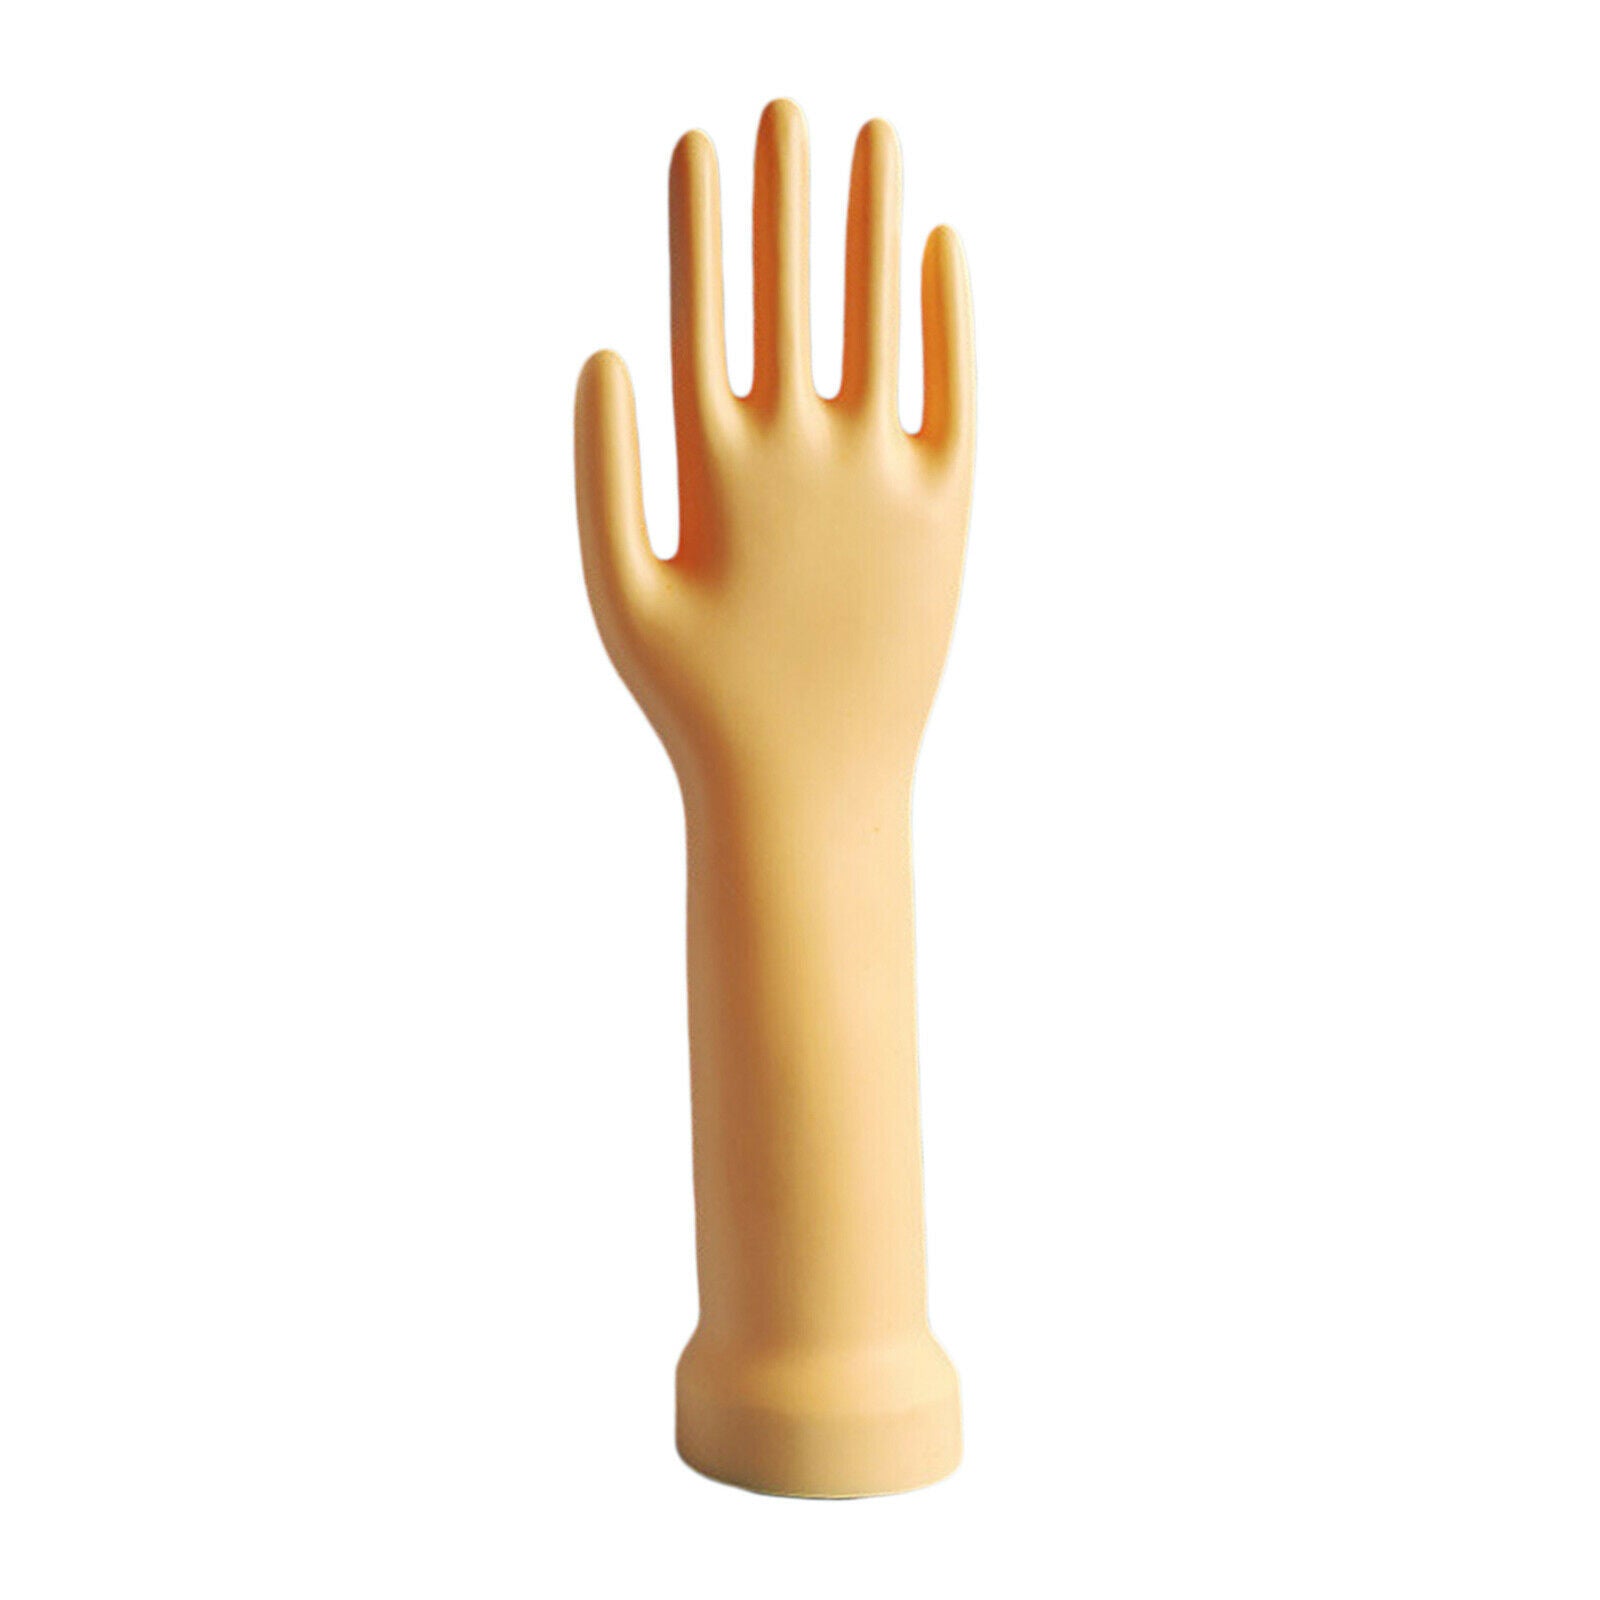 Bracelet Holder Stand Glove Display Holder for Organization Skin